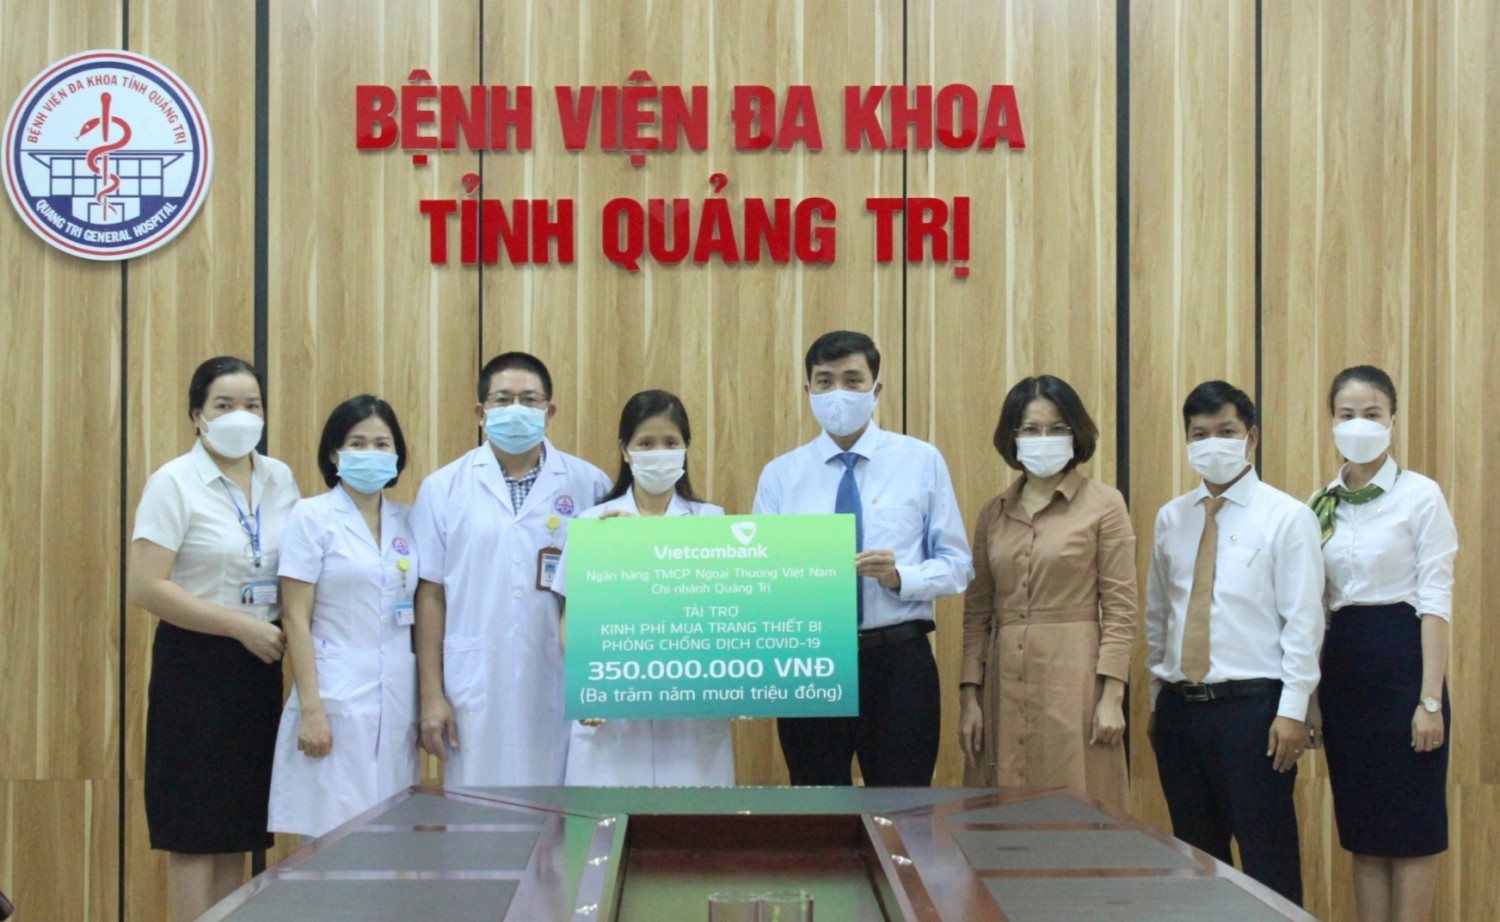 Vietcombank Chi nhánh Quảng Trị trao kinh phí mua sắm trang thiết bị phòng, chống COVID-19 cho Bệnh viện Đa khoa tỉnh - Ảnh: K.S